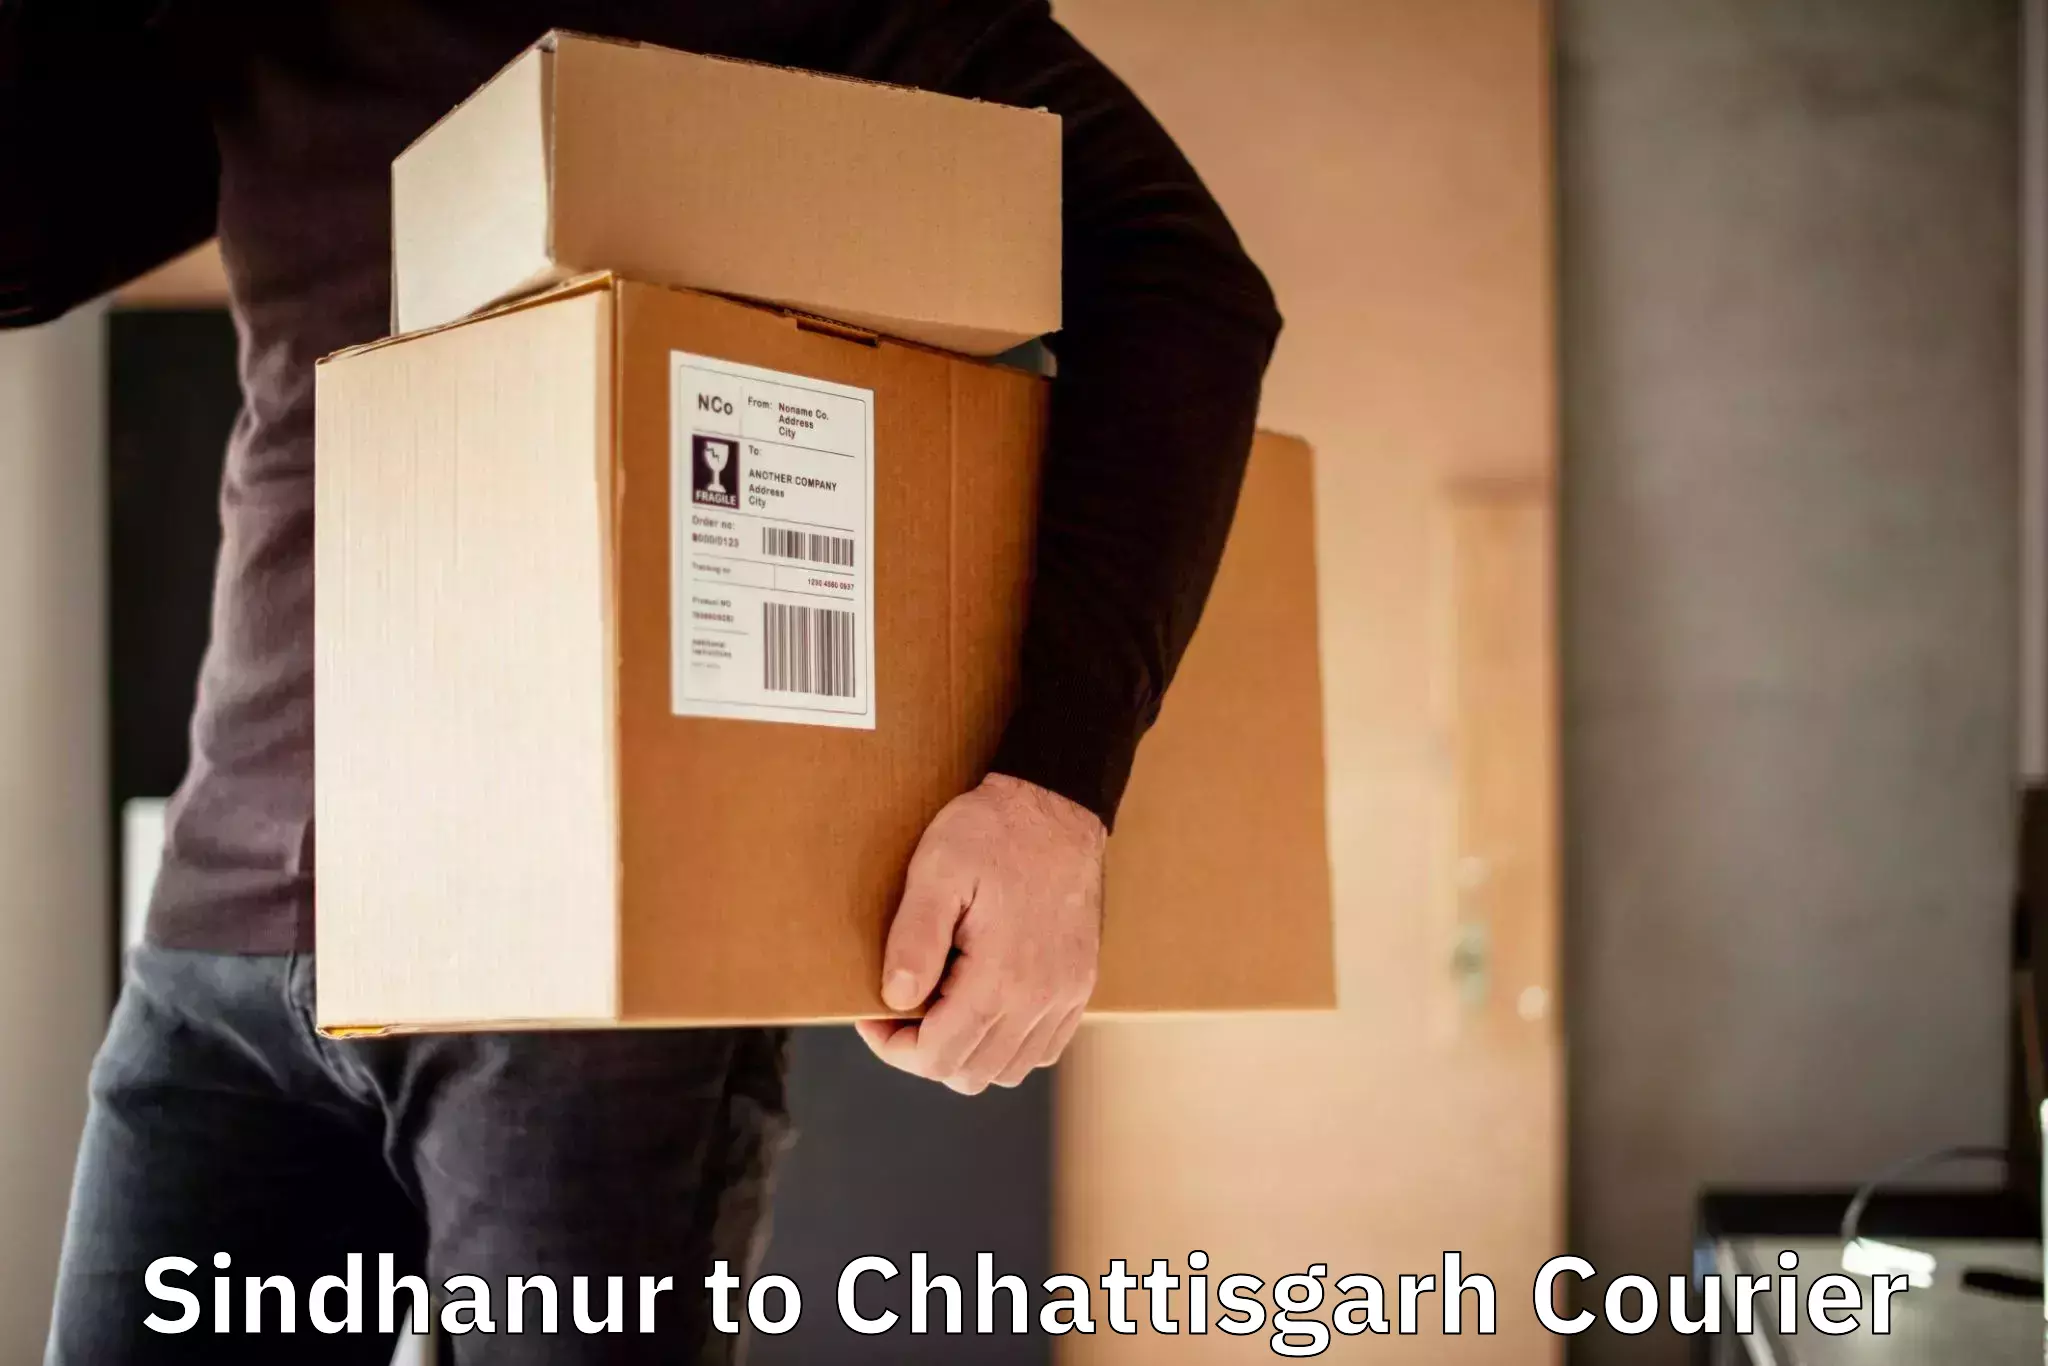 Tailored shipping services Sindhanur to Bijapur Chhattisgarh